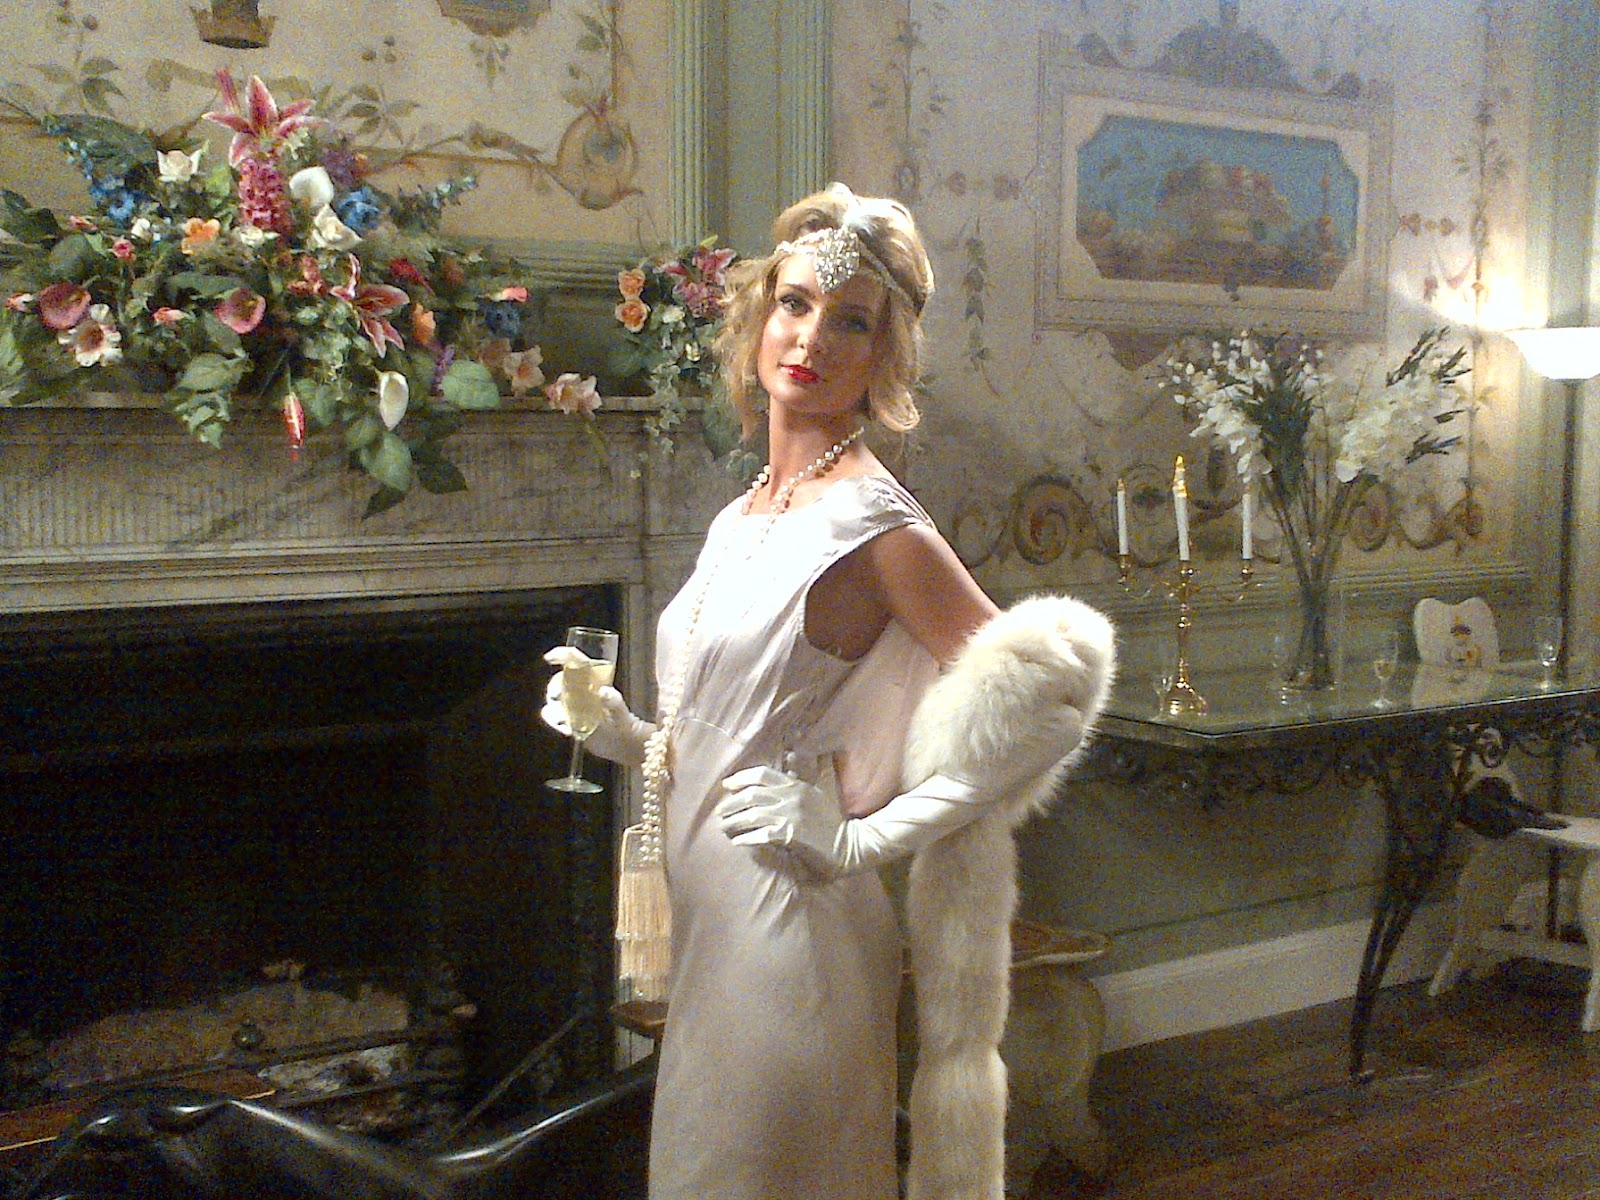 Meninas Sofisticadas: 1920s - Kate Moss' dress